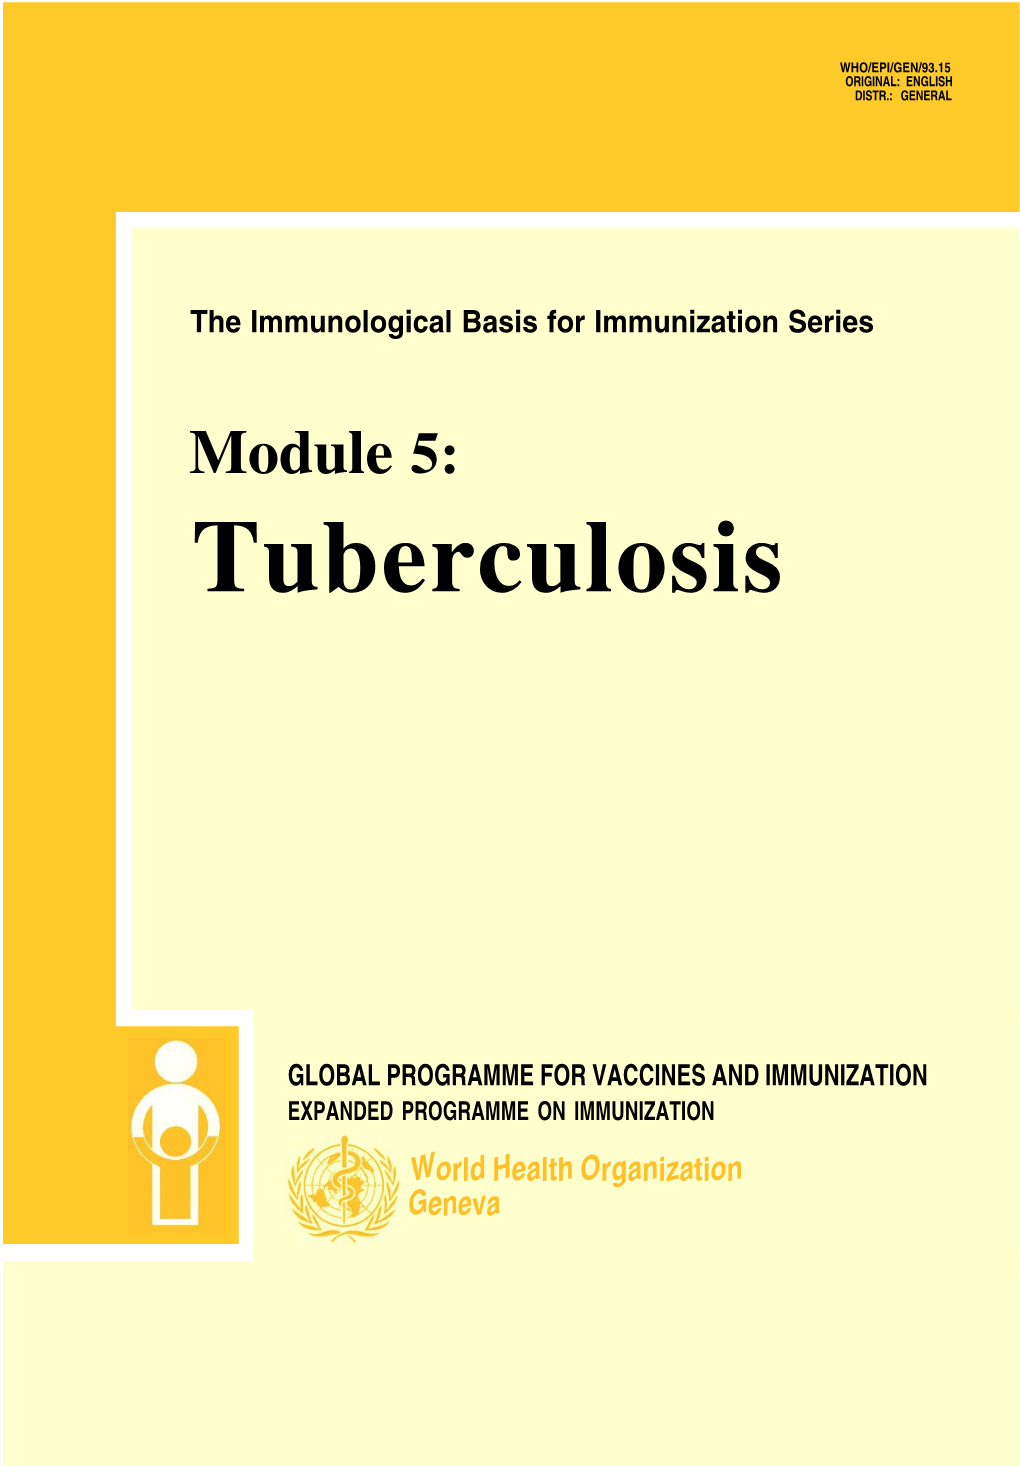 Module 5: Tuberculosis